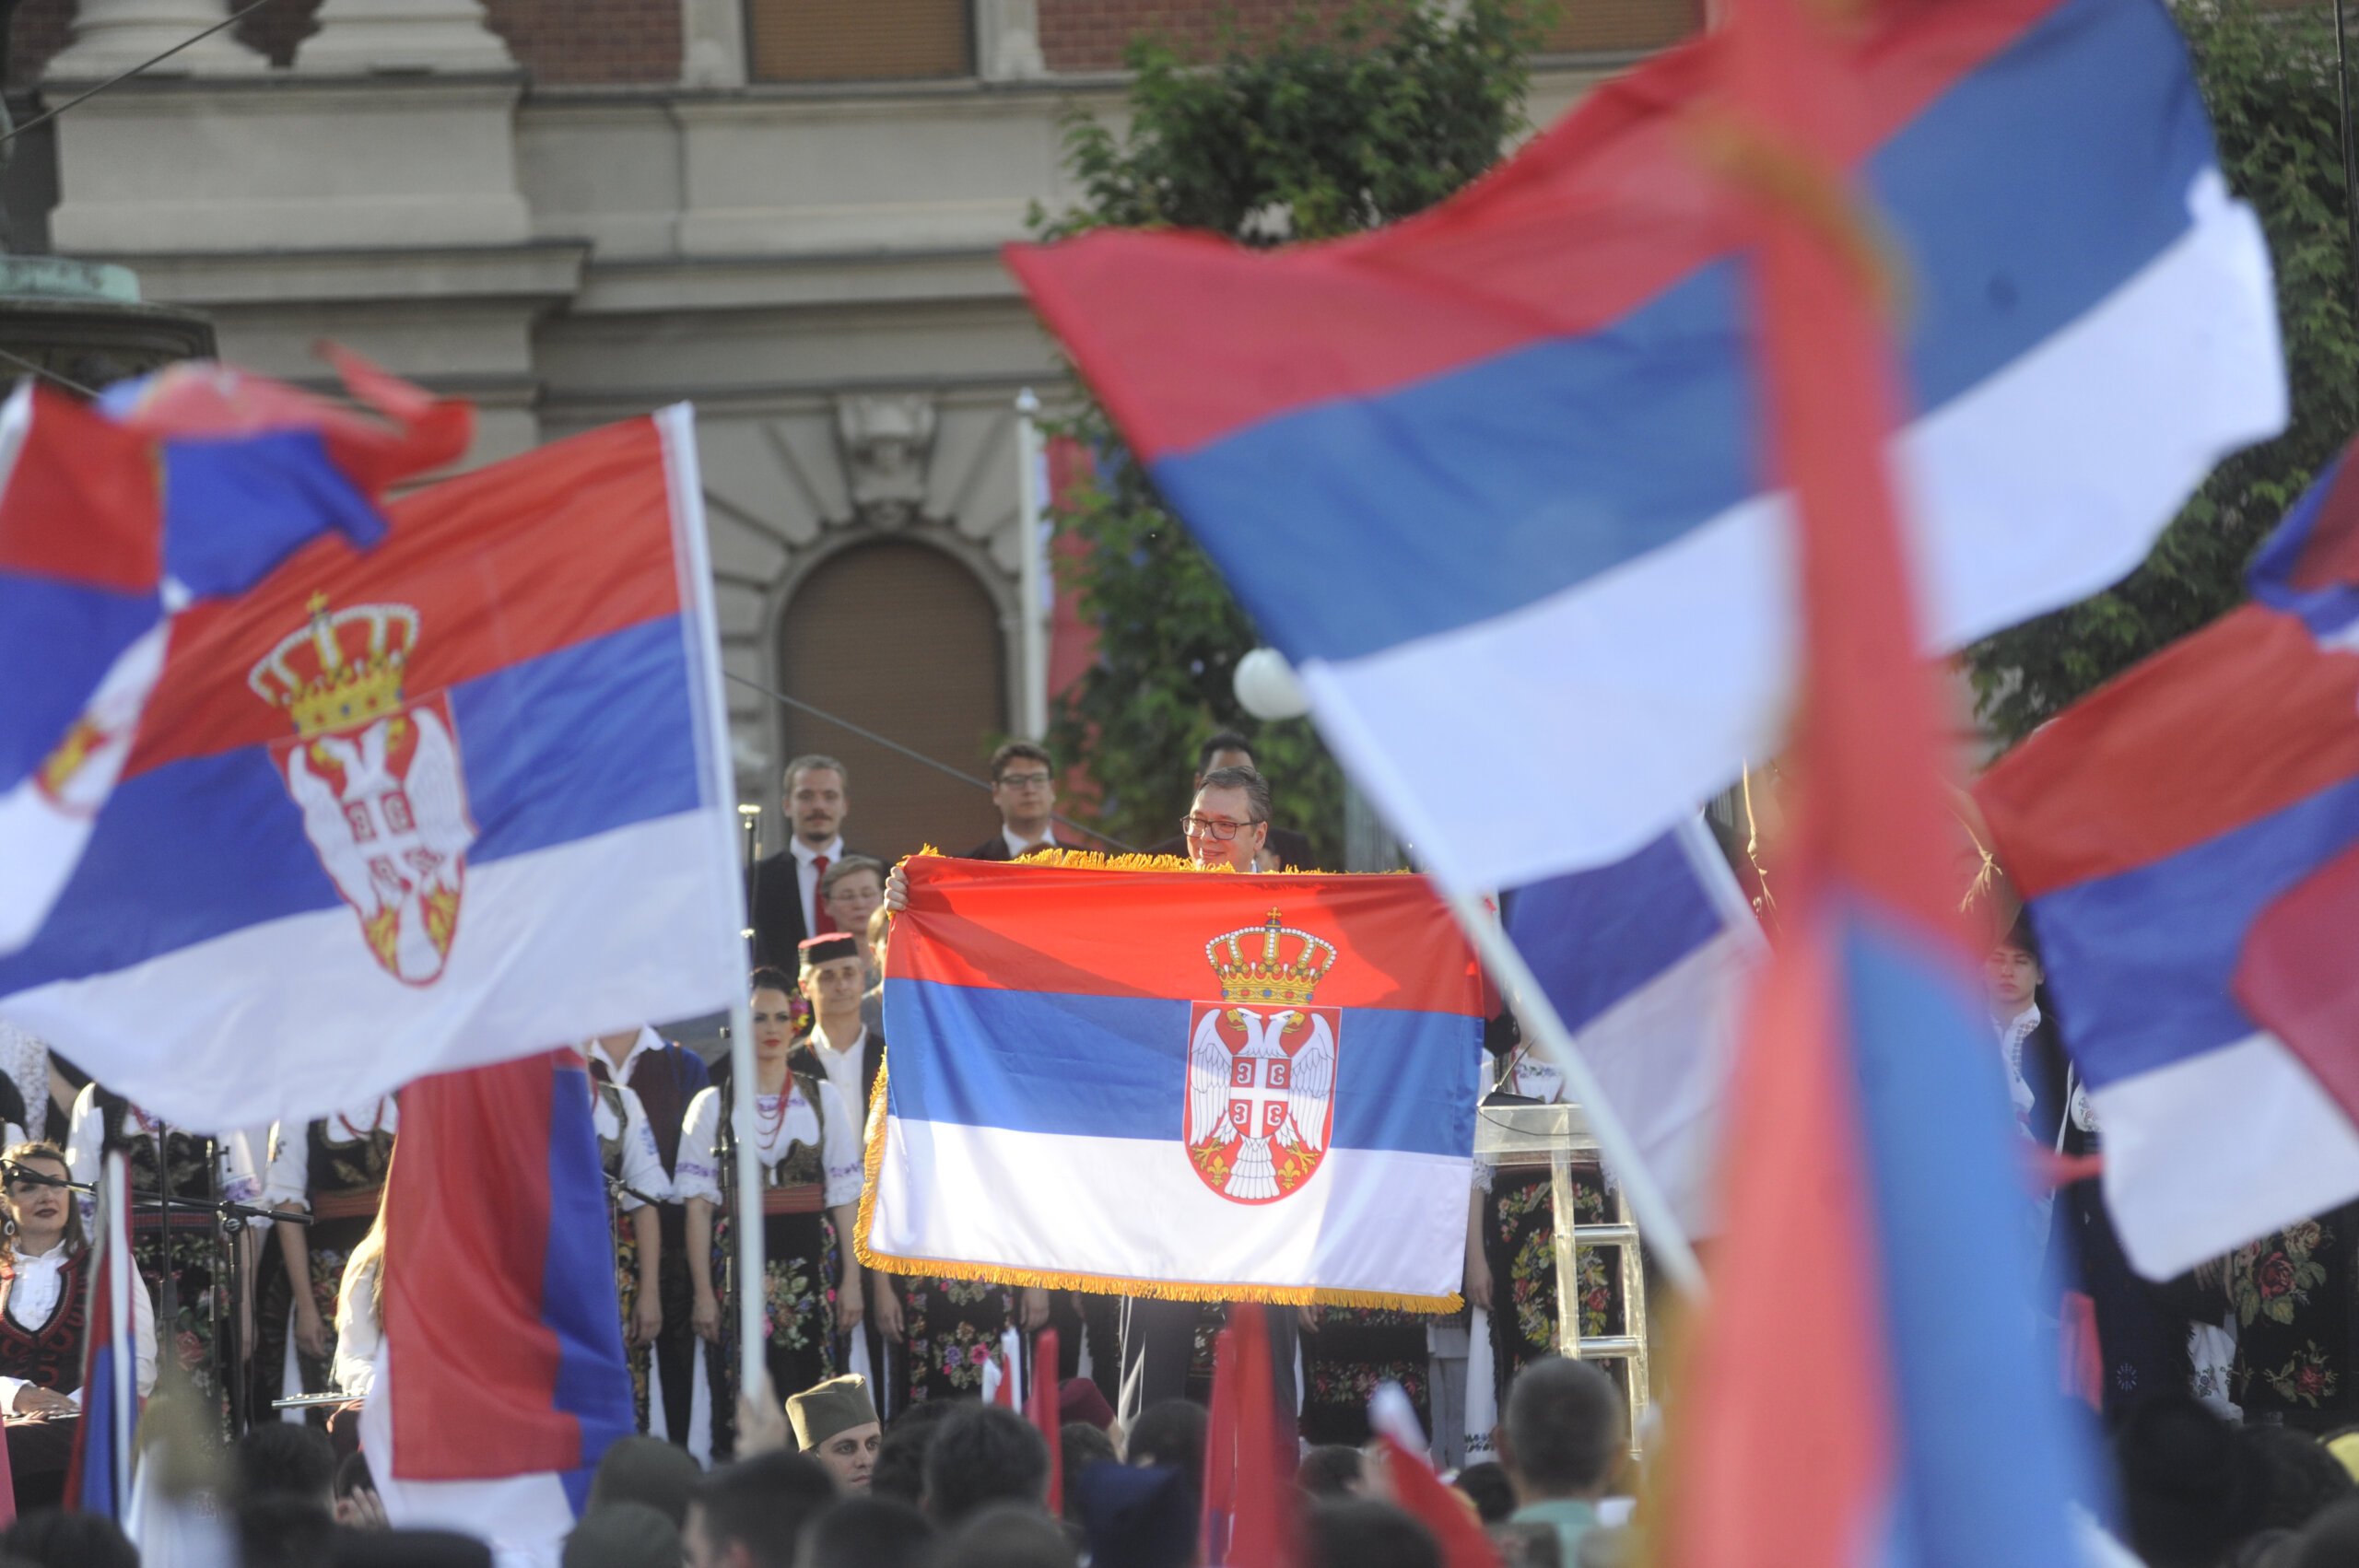 (FOTO) Kako je izgledala manifestacija "Jedan narod, jedan sabor - Srbija i Srpska" na Trgu republike u fotografijama? 2